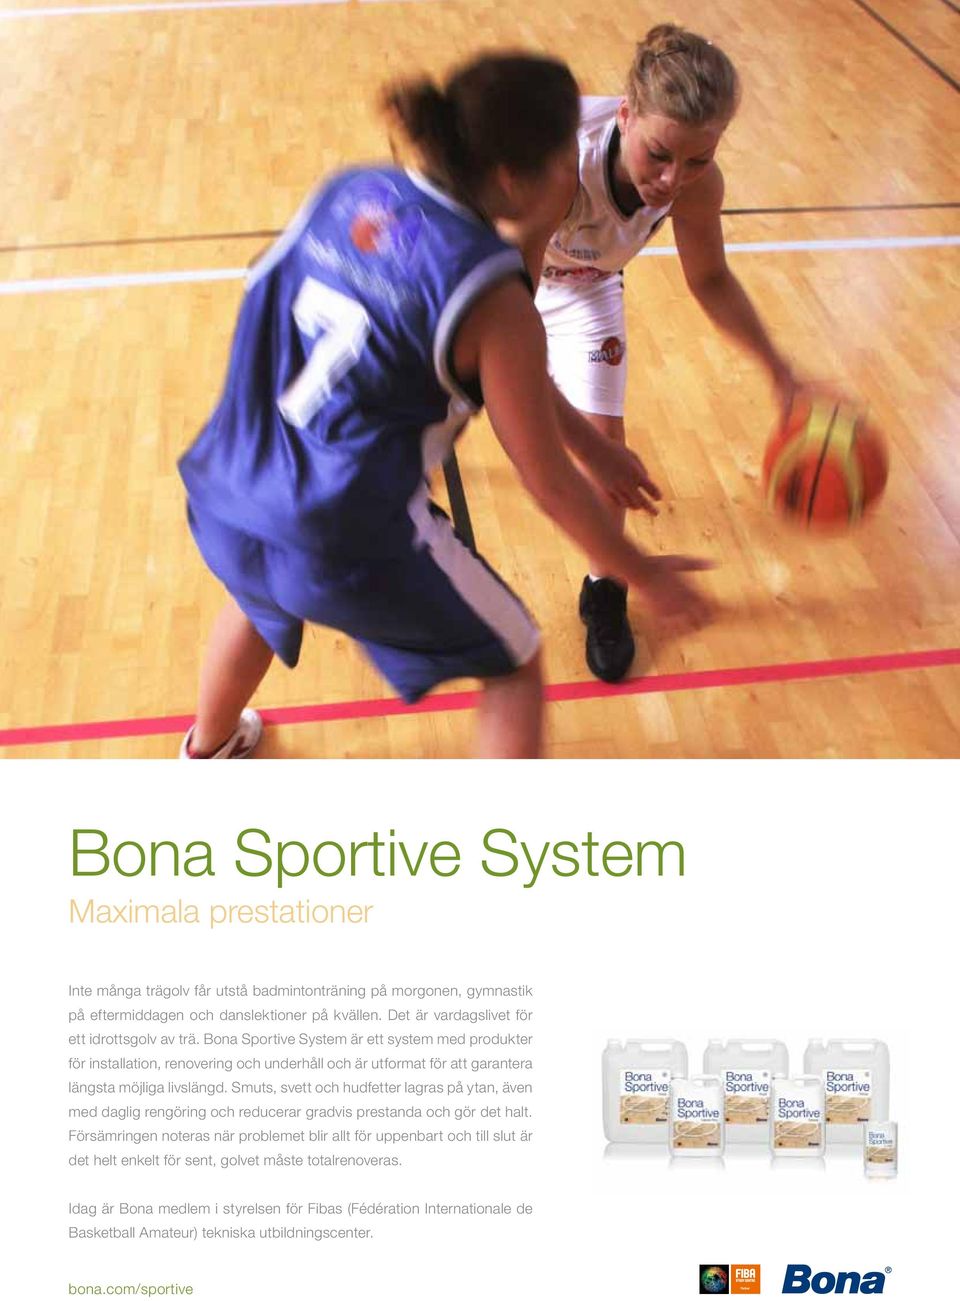 Bona Sportive System är ett system med produkter för installation, renovering och underhåll och är utformat för att garantera längsta möjliga livslängd.